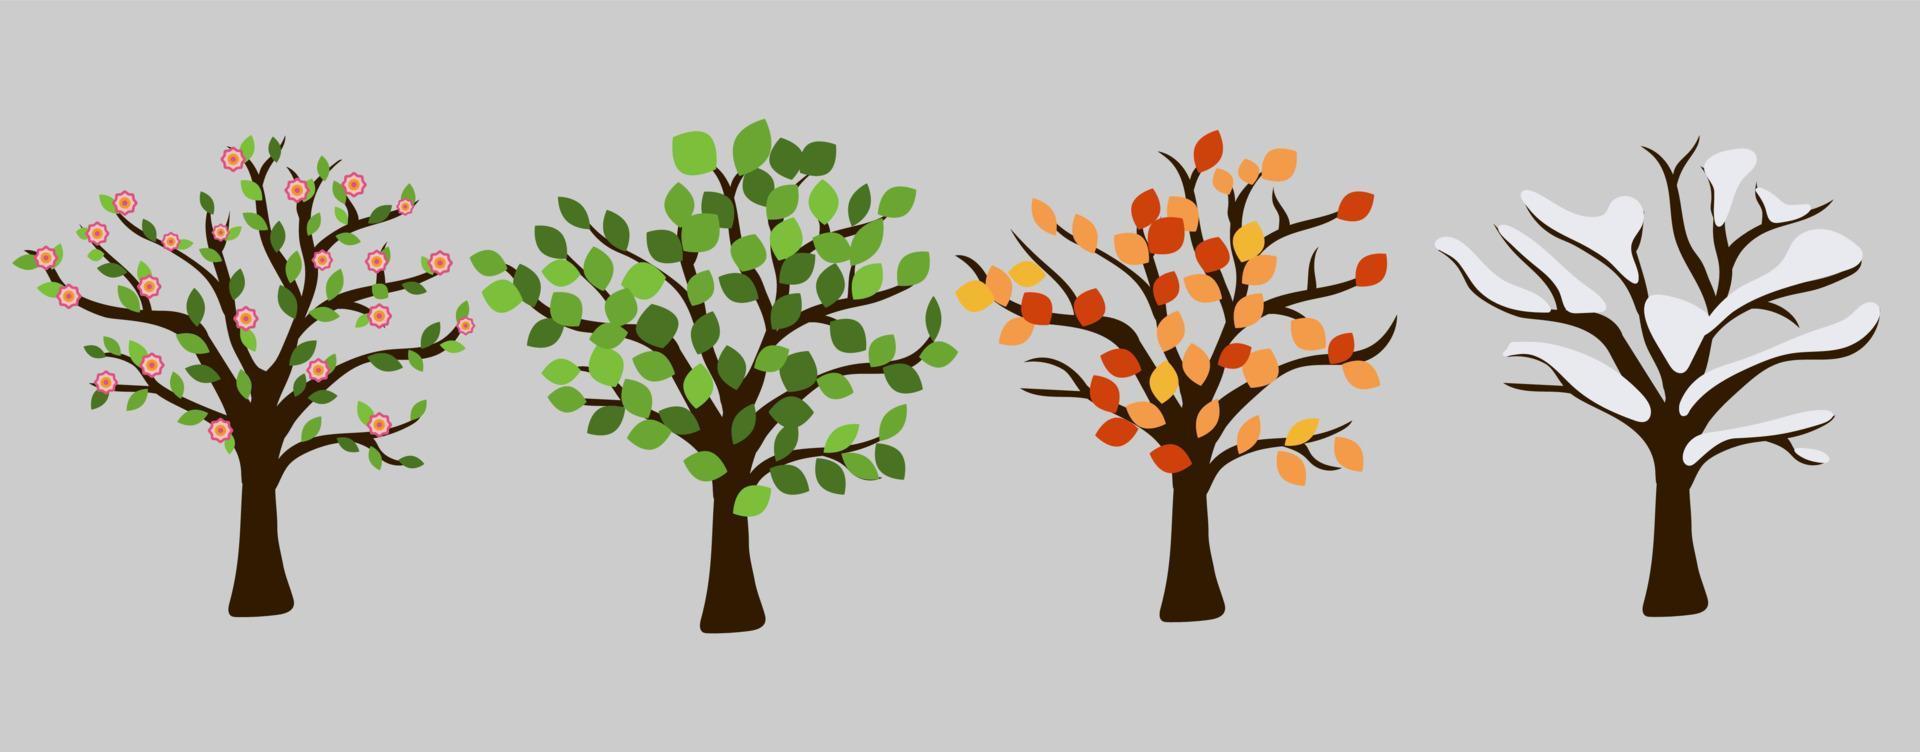 árvore em design gráfico de quatro temporadas. flor rosa, folhas de laranja, neve branca e folhas verdes. ilustração vetorial isolada para cada ano de tempo. vetor